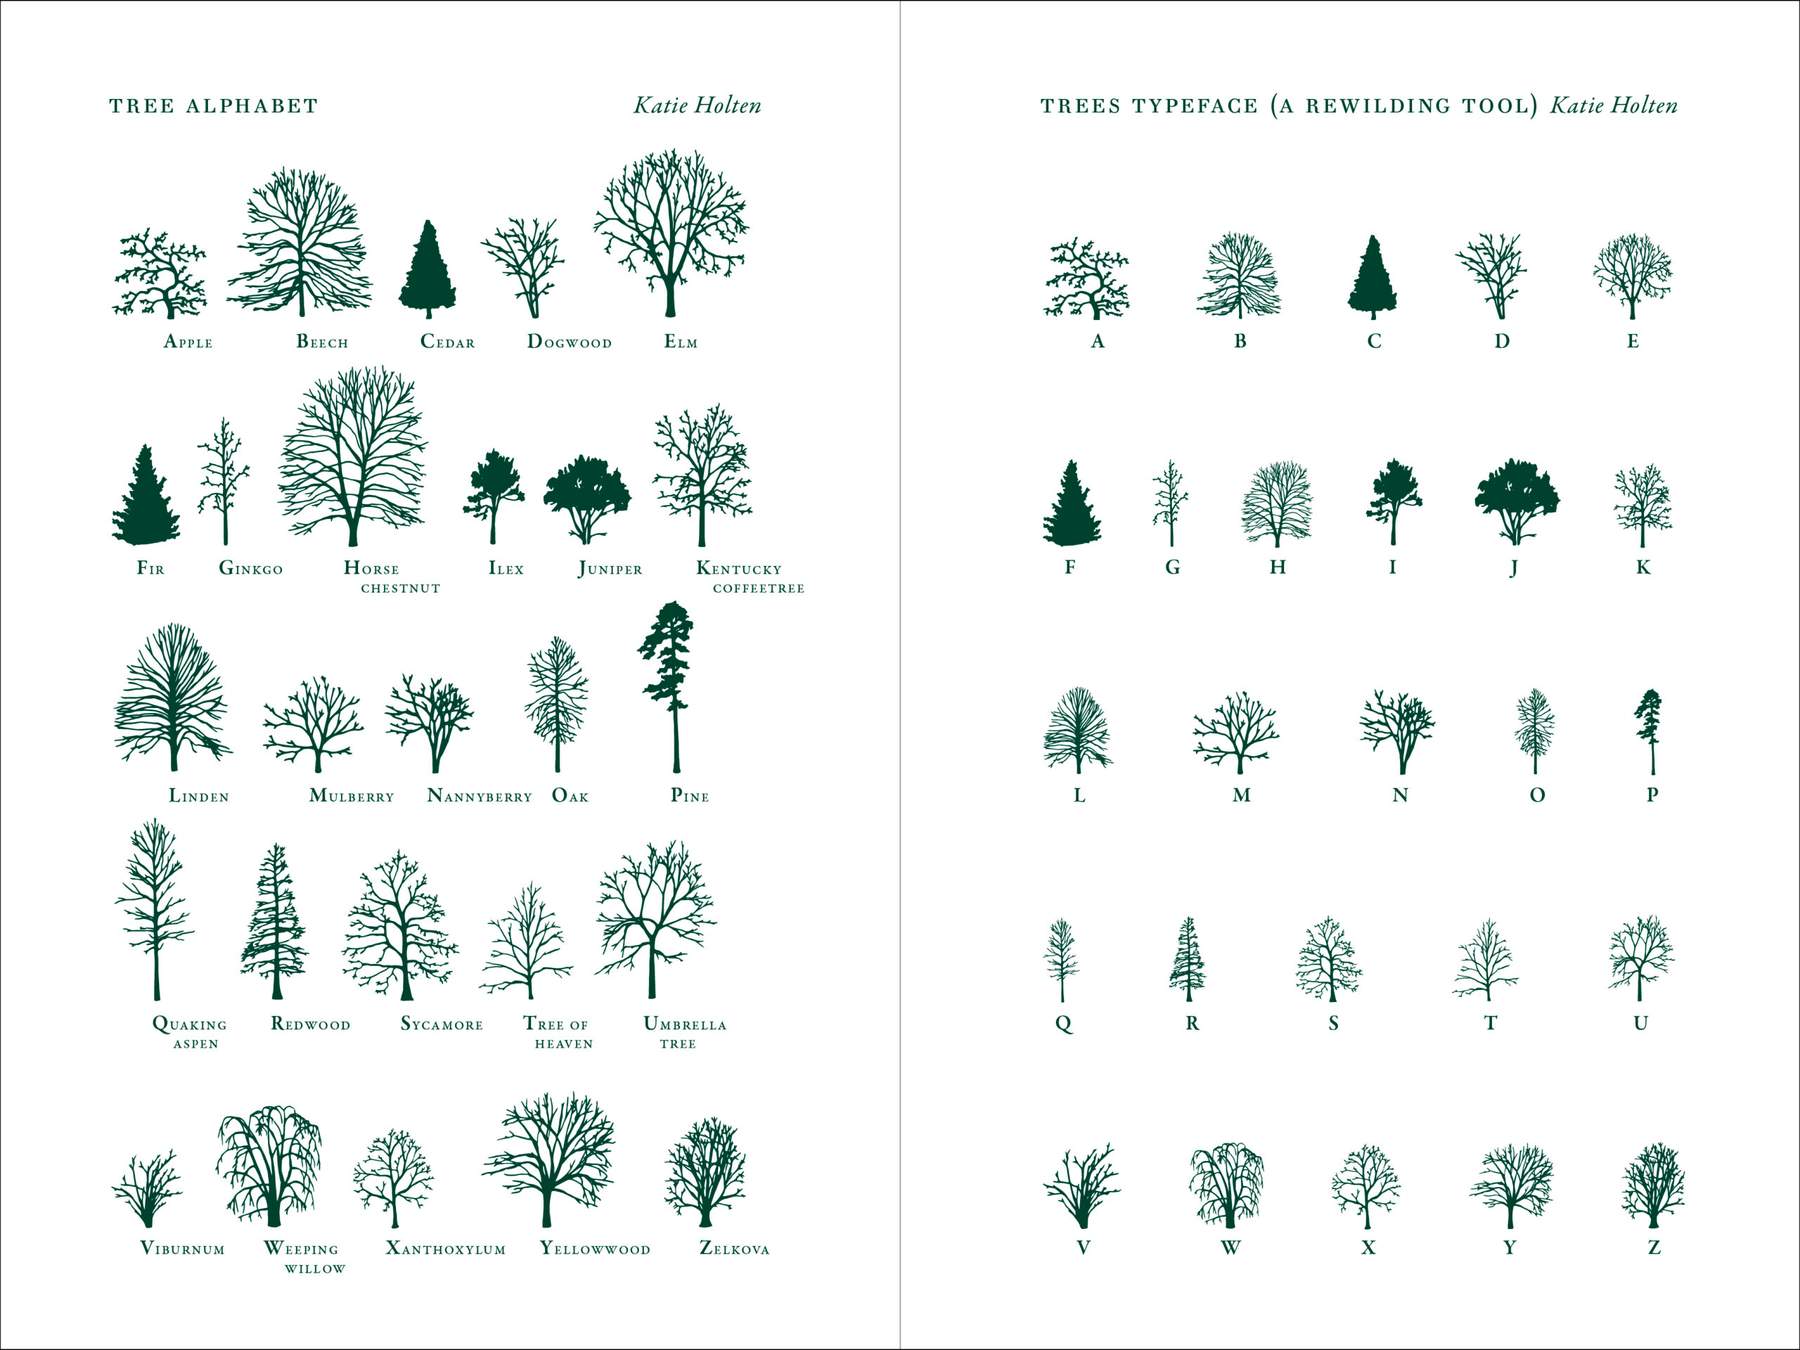 Tree Alphabet / Trees Typeface - Katie Holten